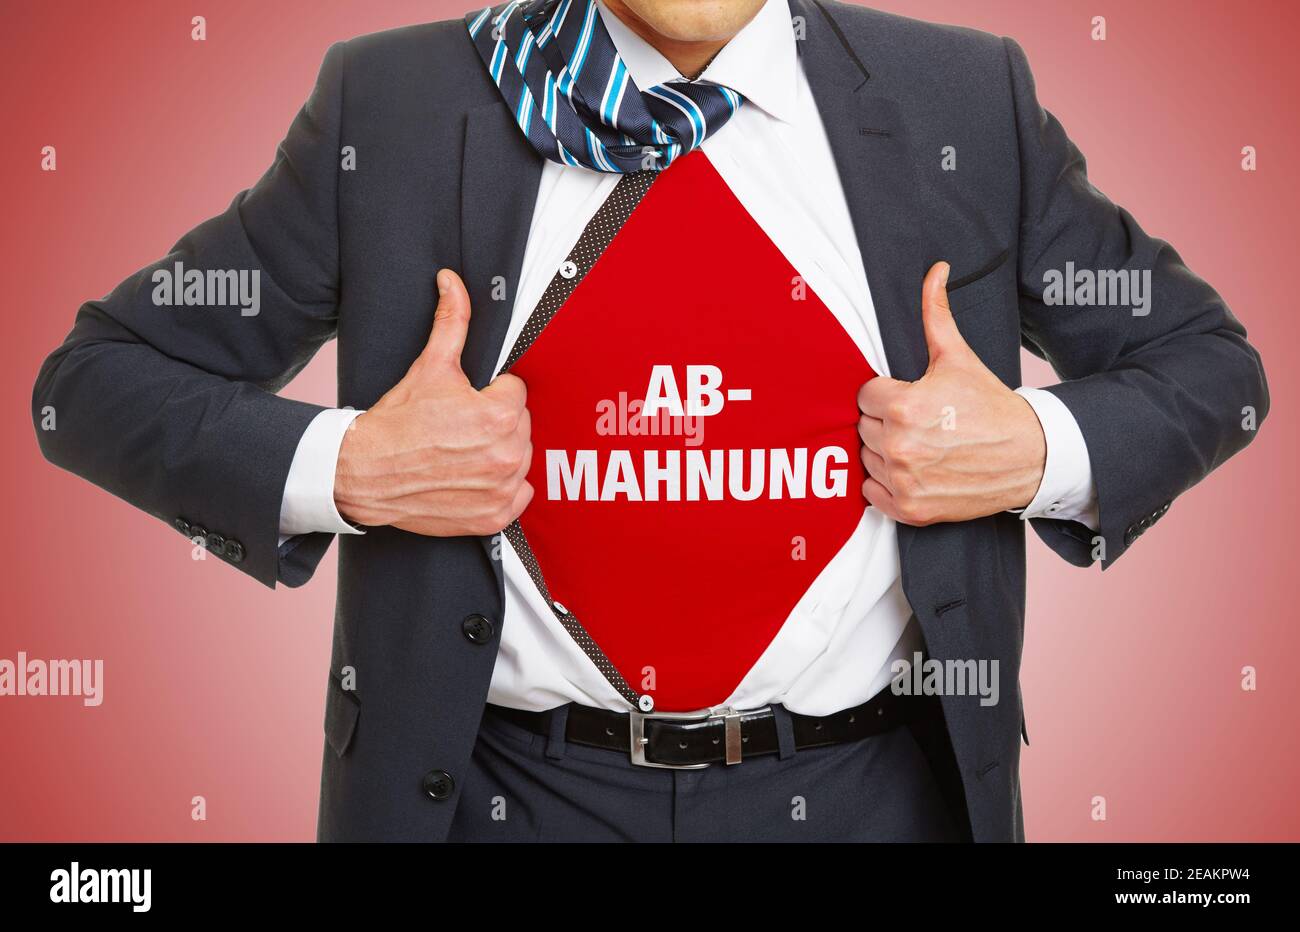 Abhmaunung (allemand pour: Avis final) concept avec lettrage sous chemise d'avocat ou d'homme d'affaires en costume Banque D'Images